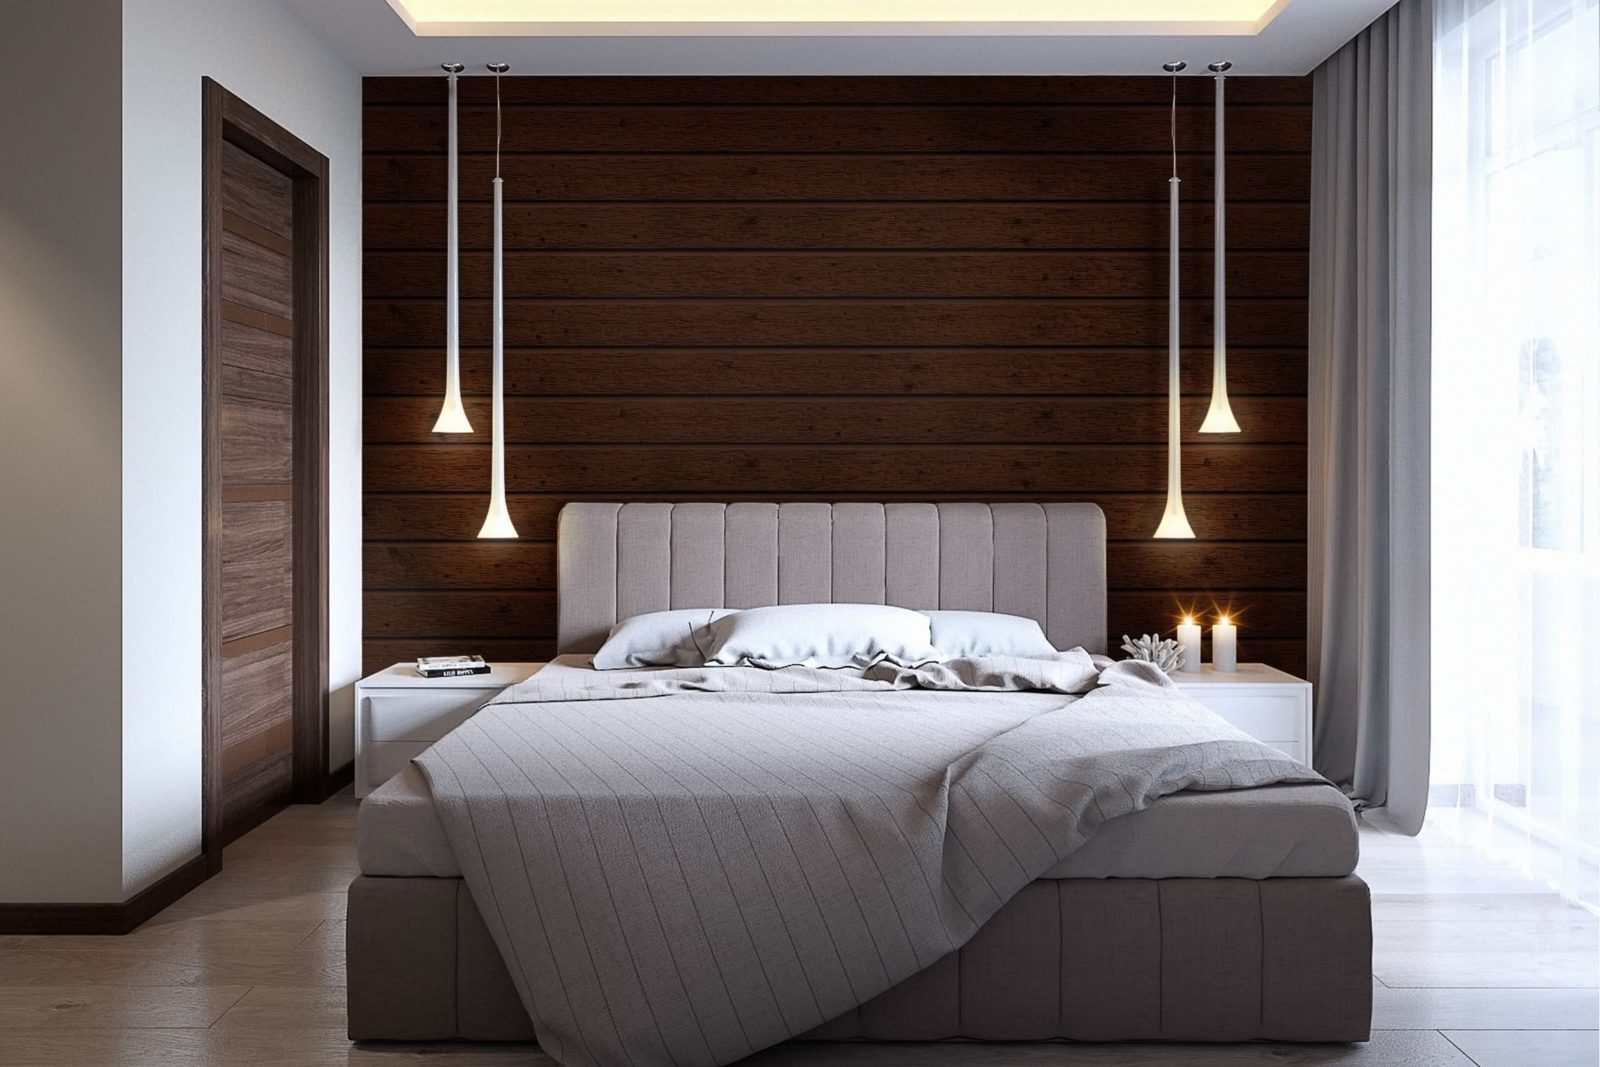 Bedroom light. Стильная спальня. Деревянная стена в интерьере спальни. Деревянные панели в интерьере спальни. Спальная с деревянными панелями.